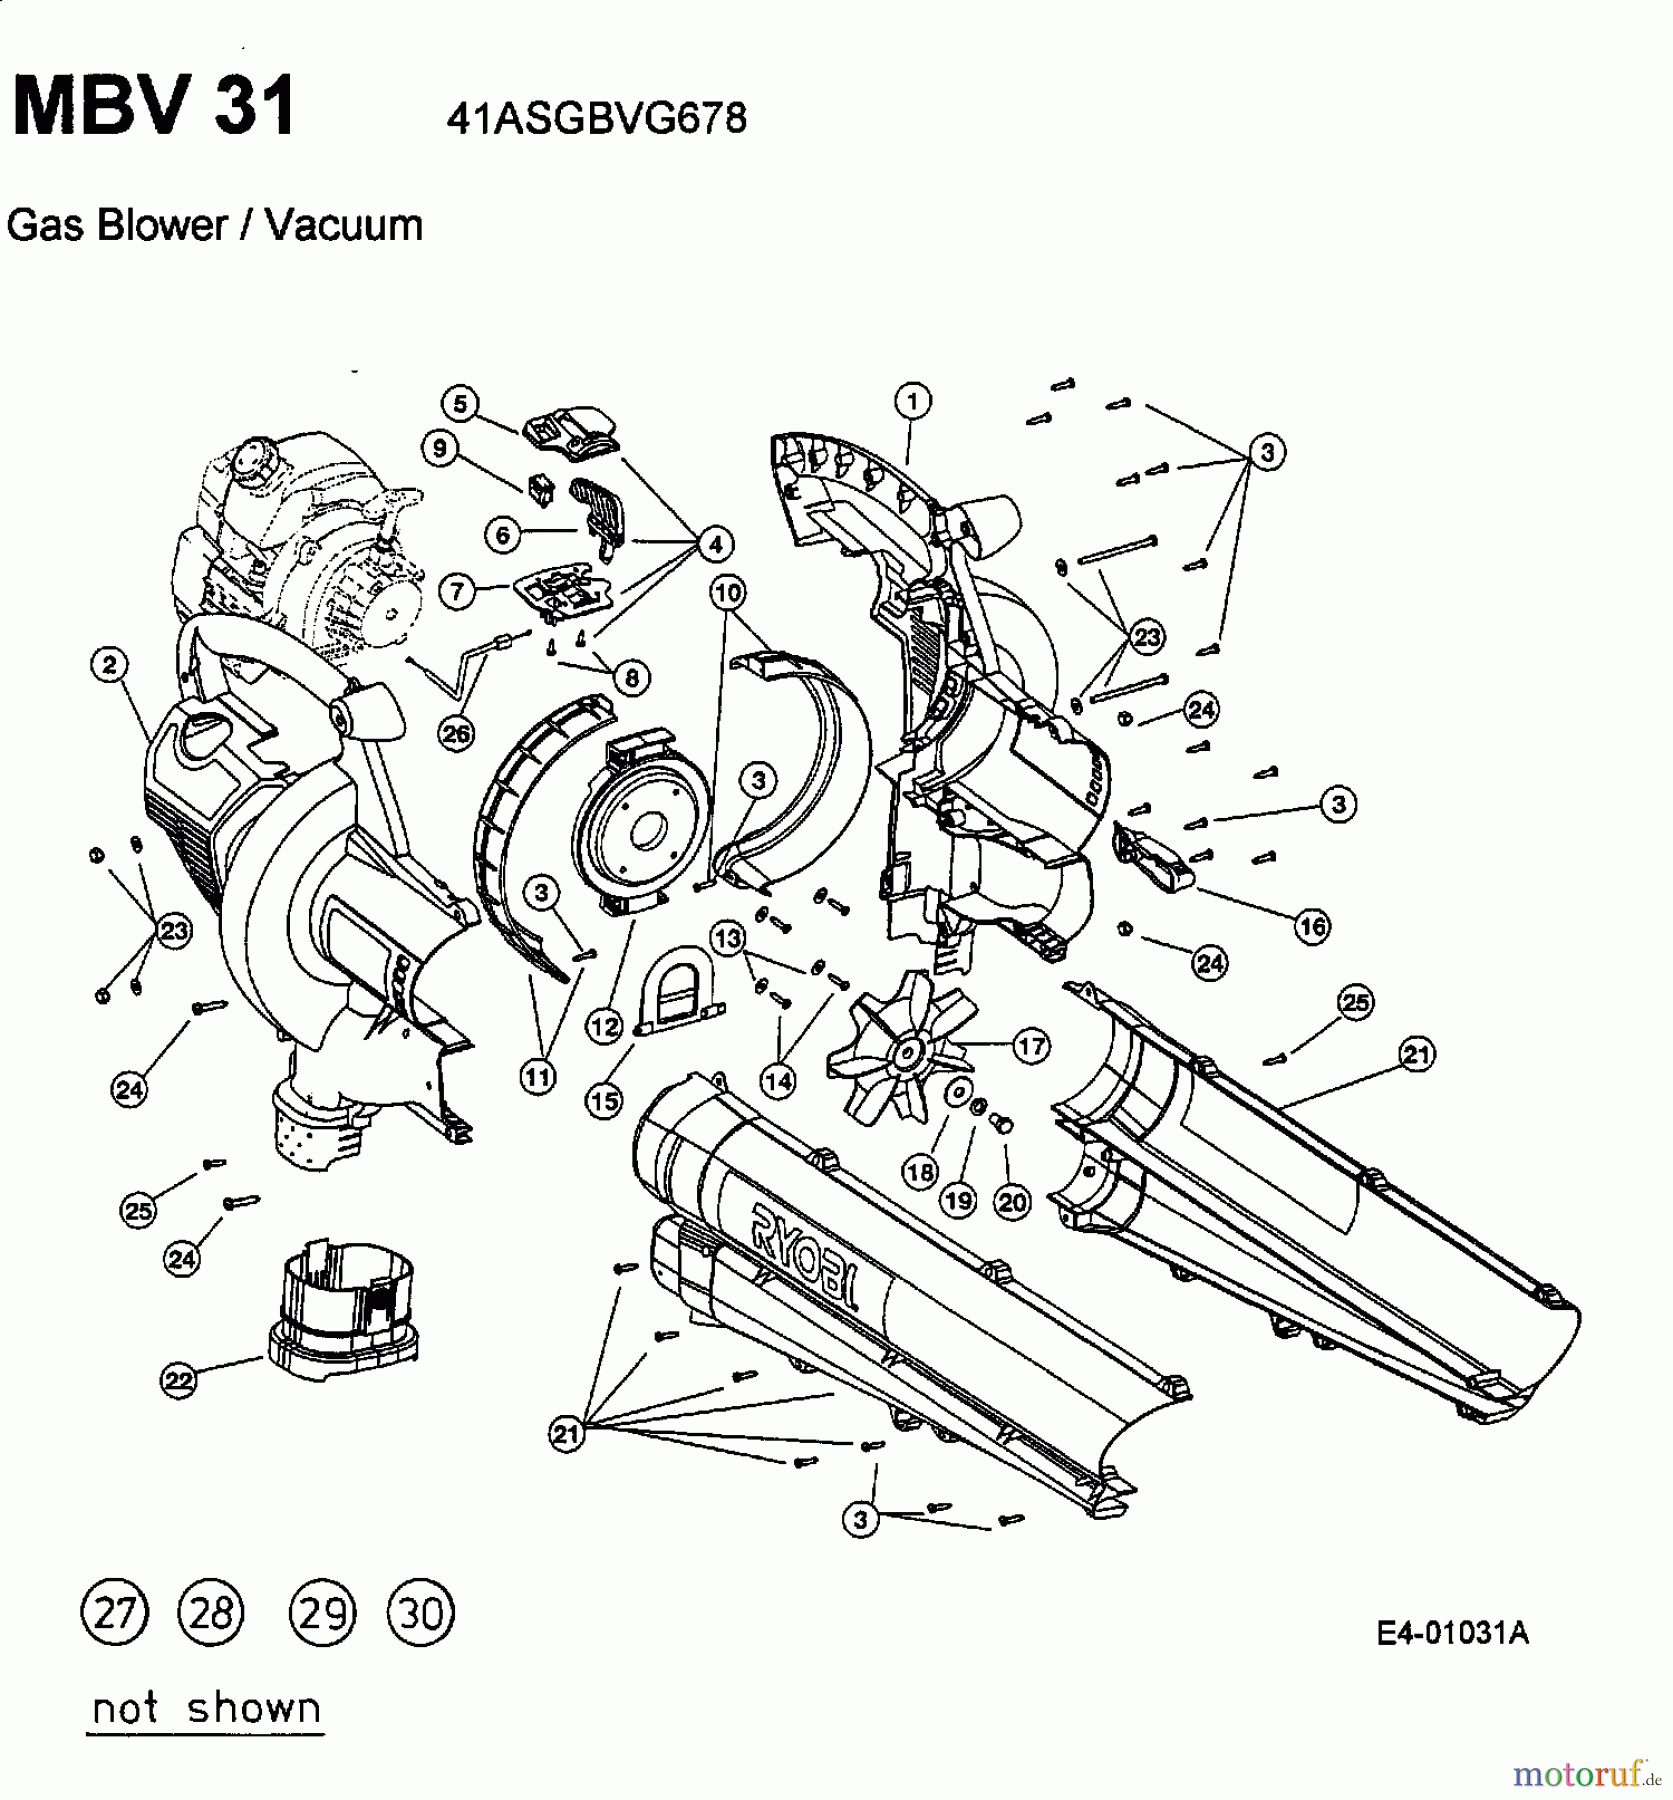  MTD Souffleur de feuille, Aspirateur de feuille MBV 31 41ASGBVG678  (2002) Machine de base